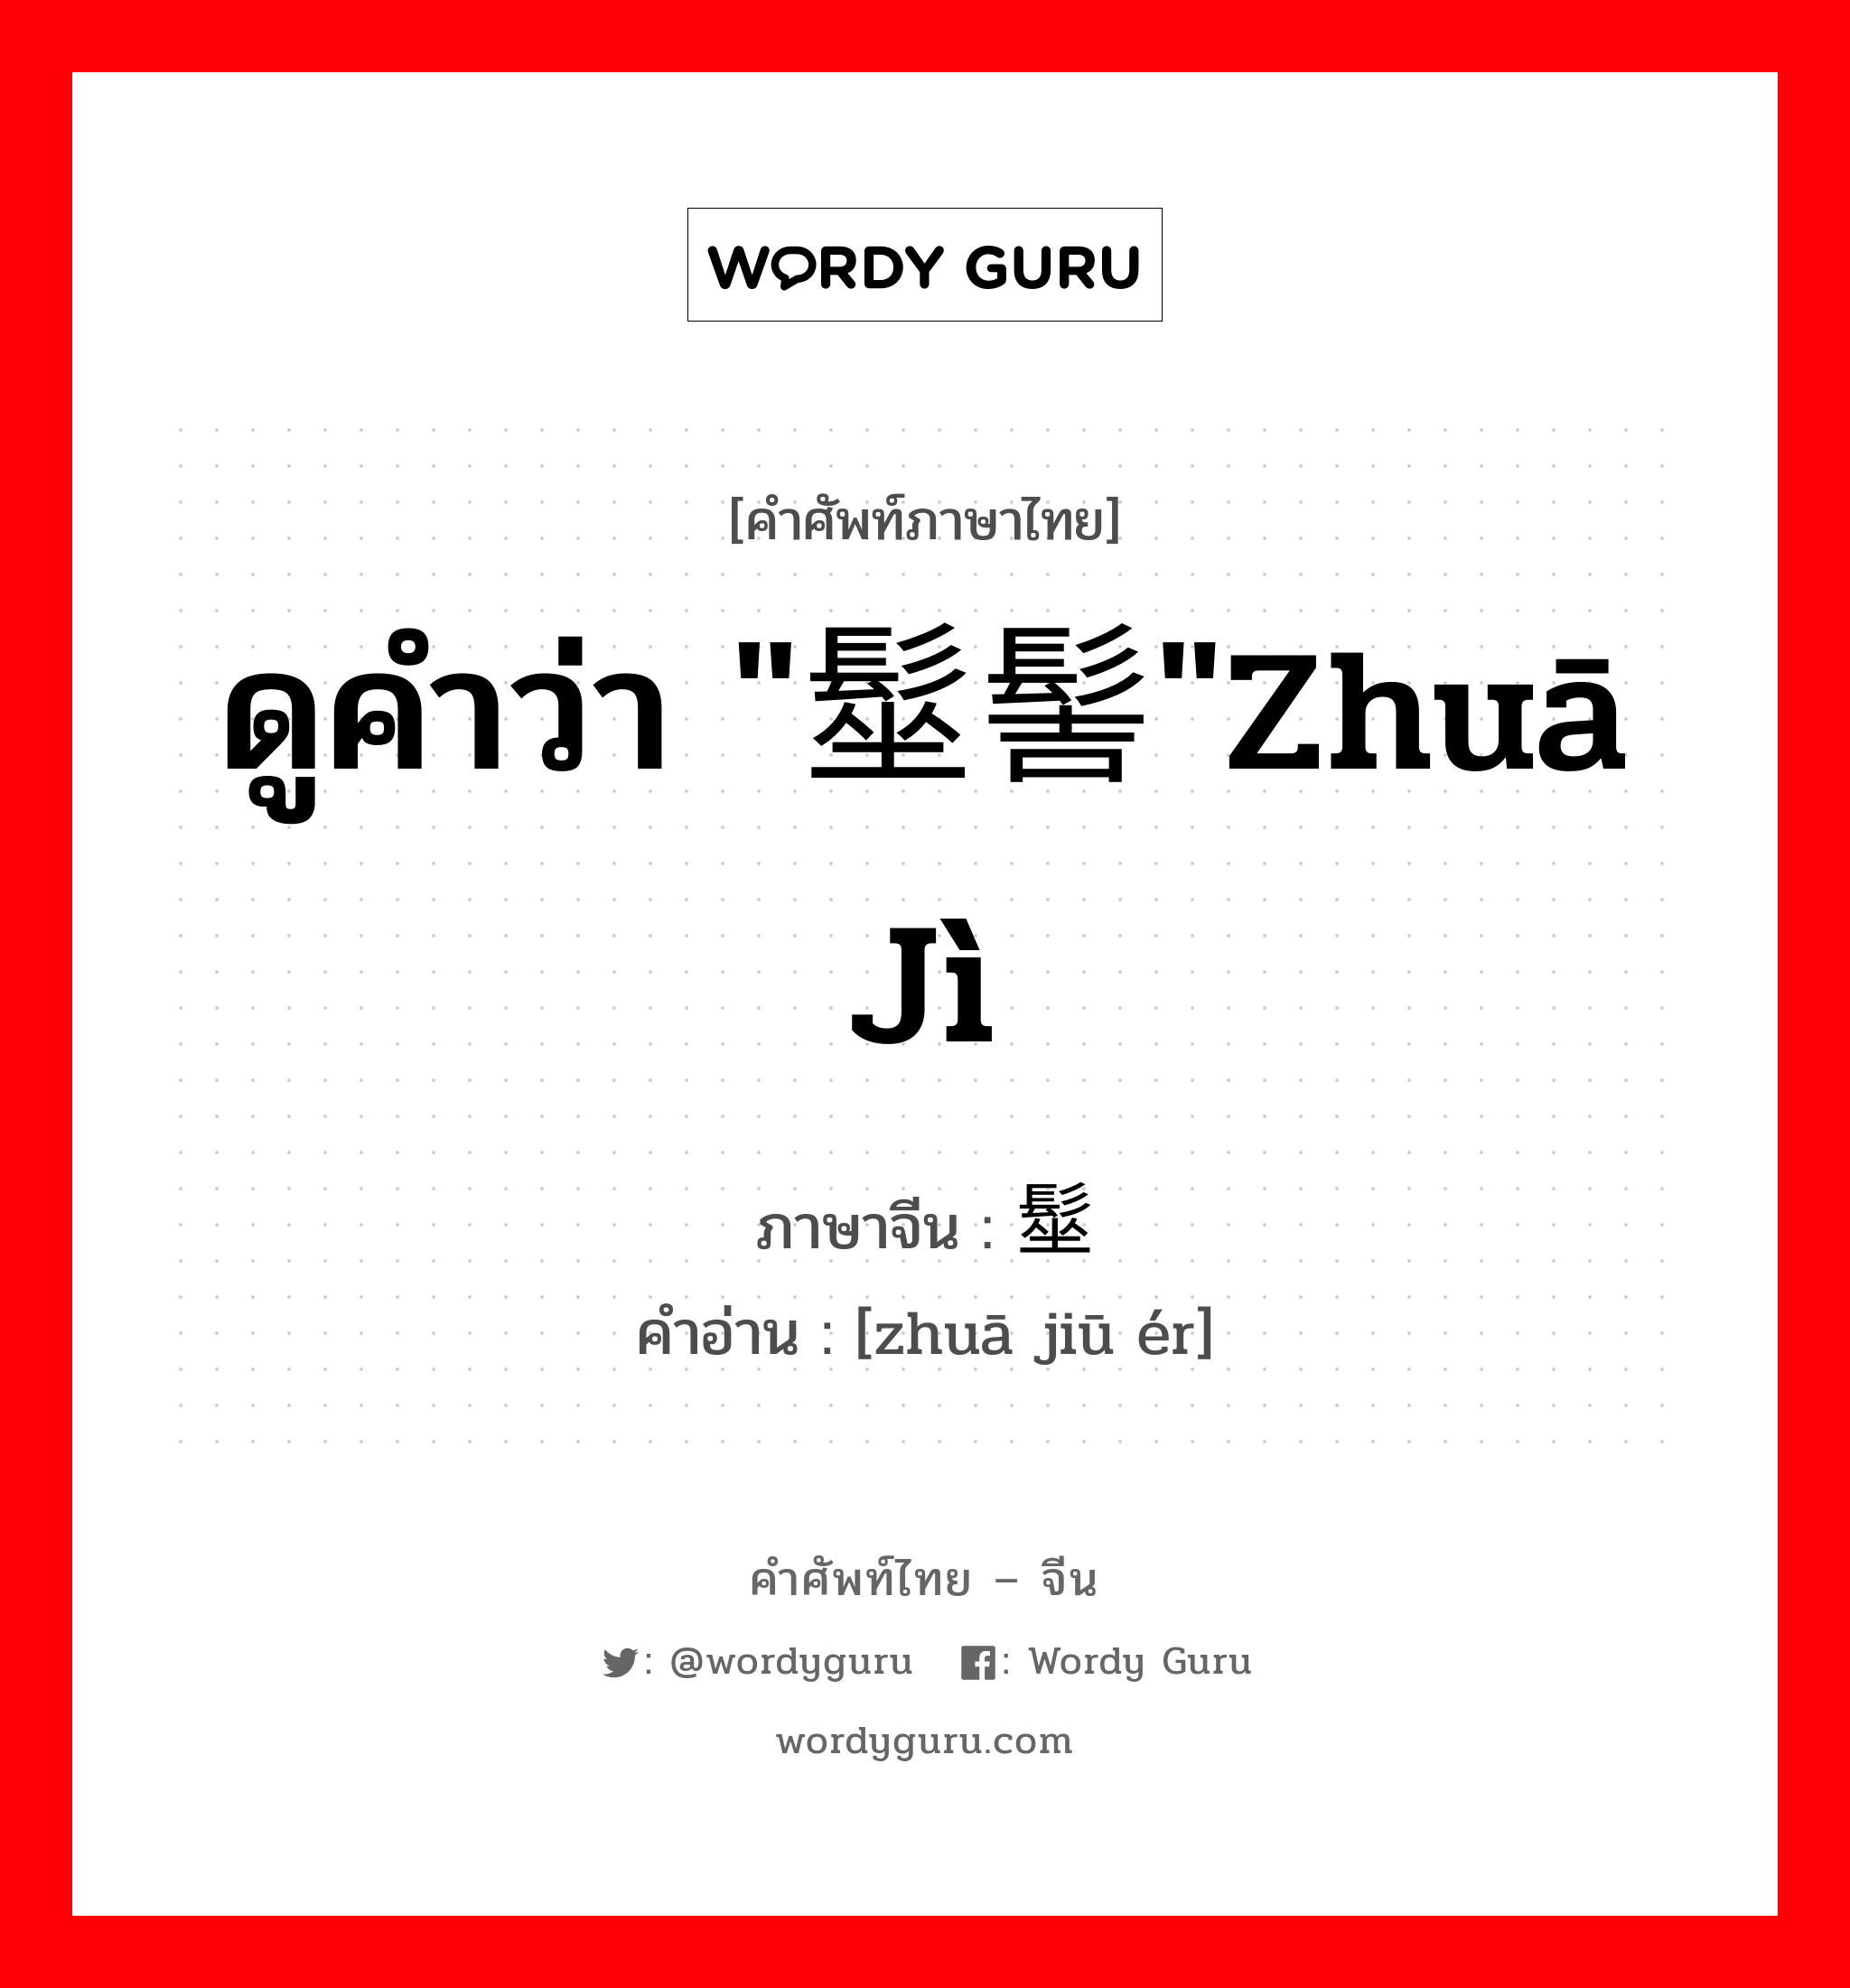 ดูคำว่า "髽髻"zhuā jì ภาษาจีนคืออะไร, คำศัพท์ภาษาไทย - จีน ดูคำว่า "髽髻"zhuā jì ภาษาจีน 髽鬏 คำอ่าน [zhuā jiū ér]